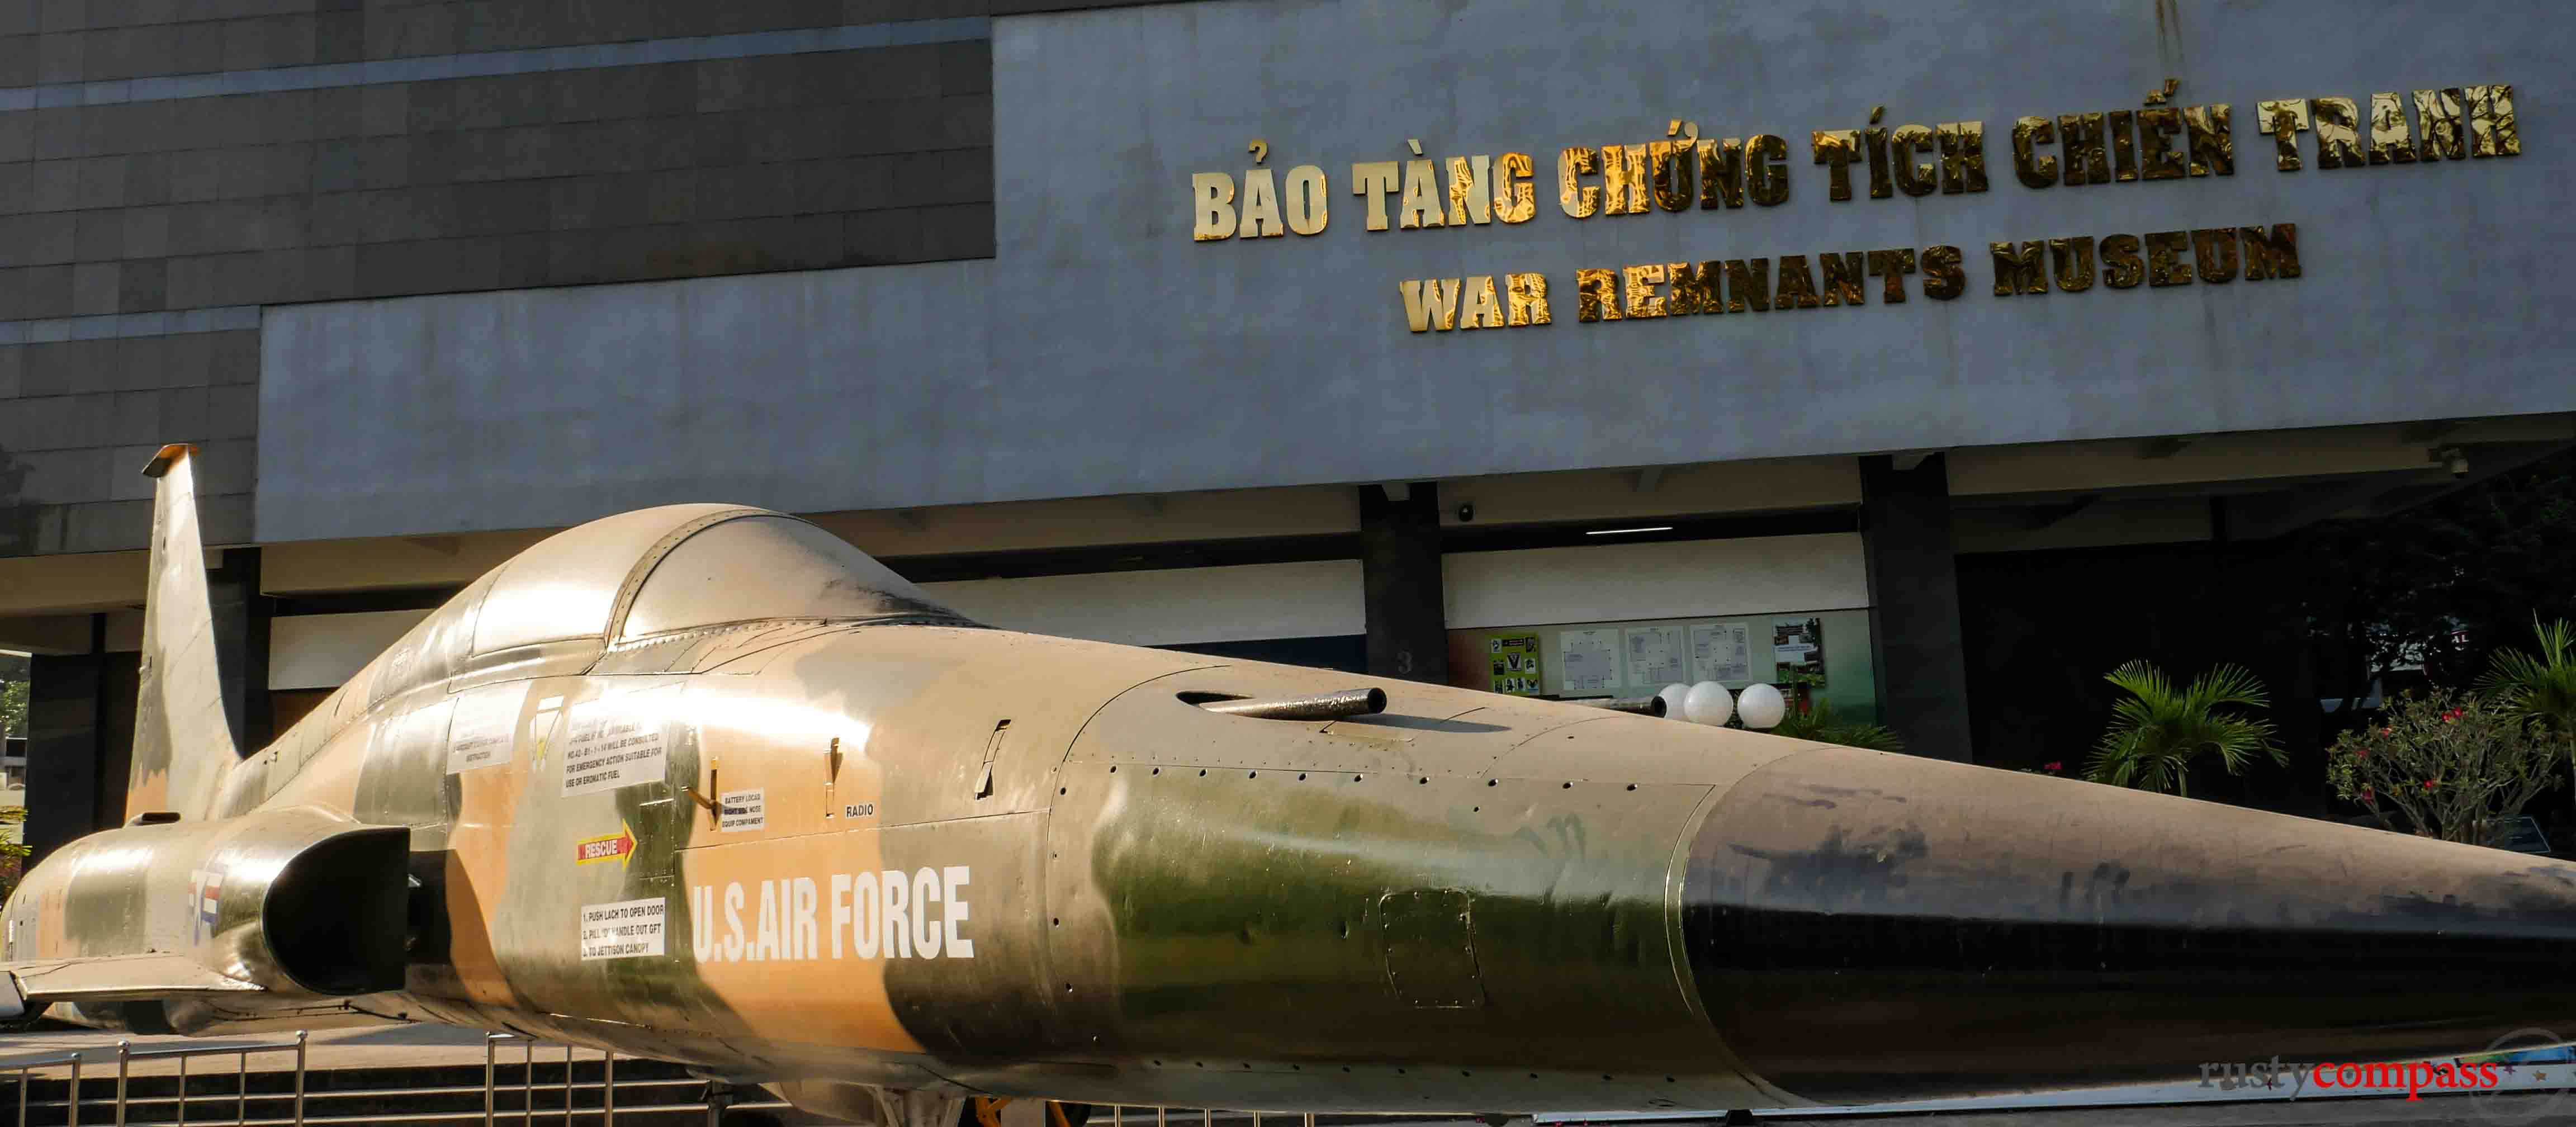 US aircrasft - War Remnants Museum, Ho Chi Minh City